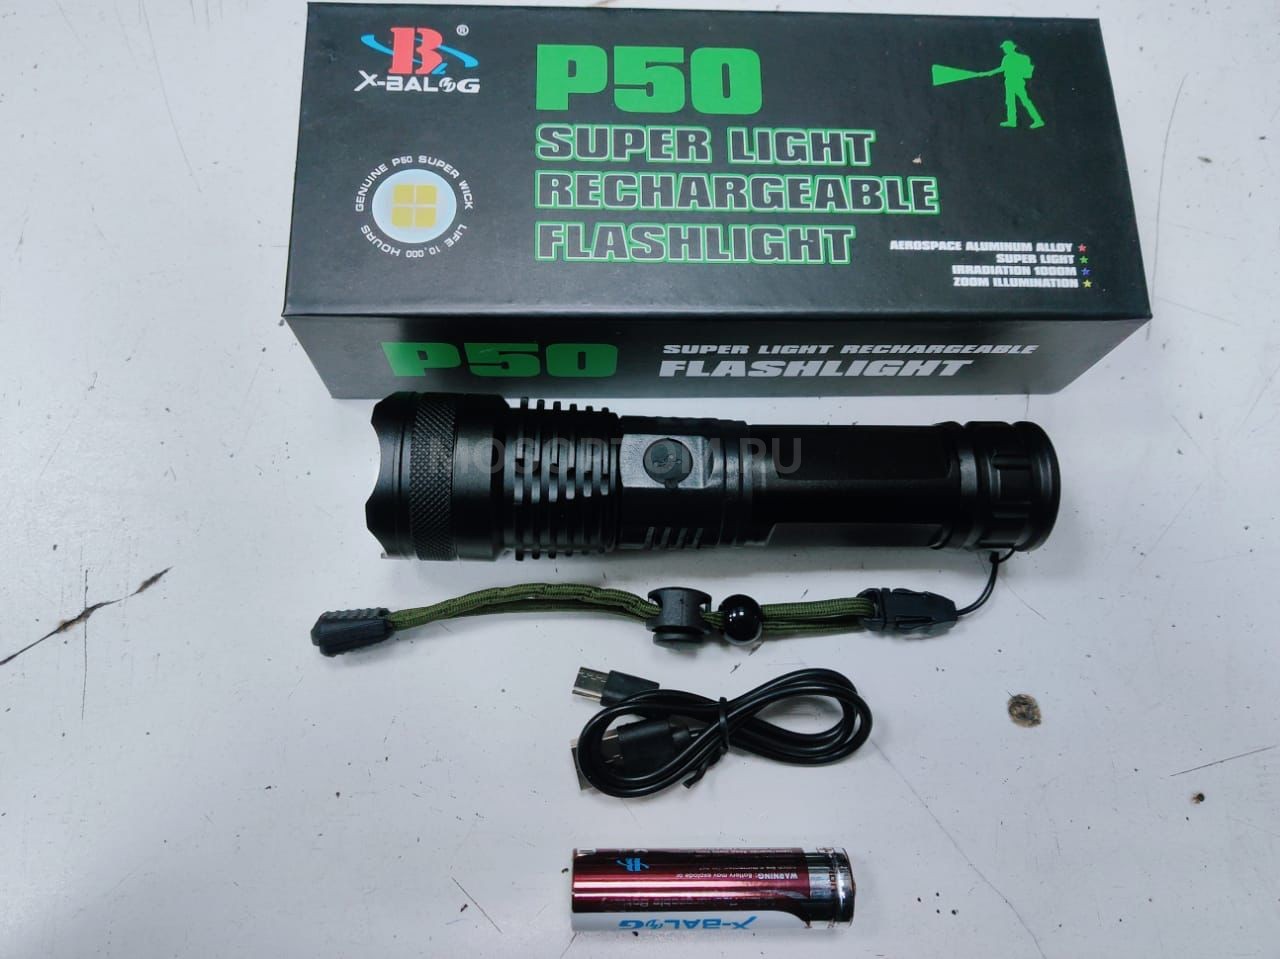 Аккумуляторный ручной фонарь X-Balog P50 Super Light Rechargeable Flashlight оптом - Фото №2